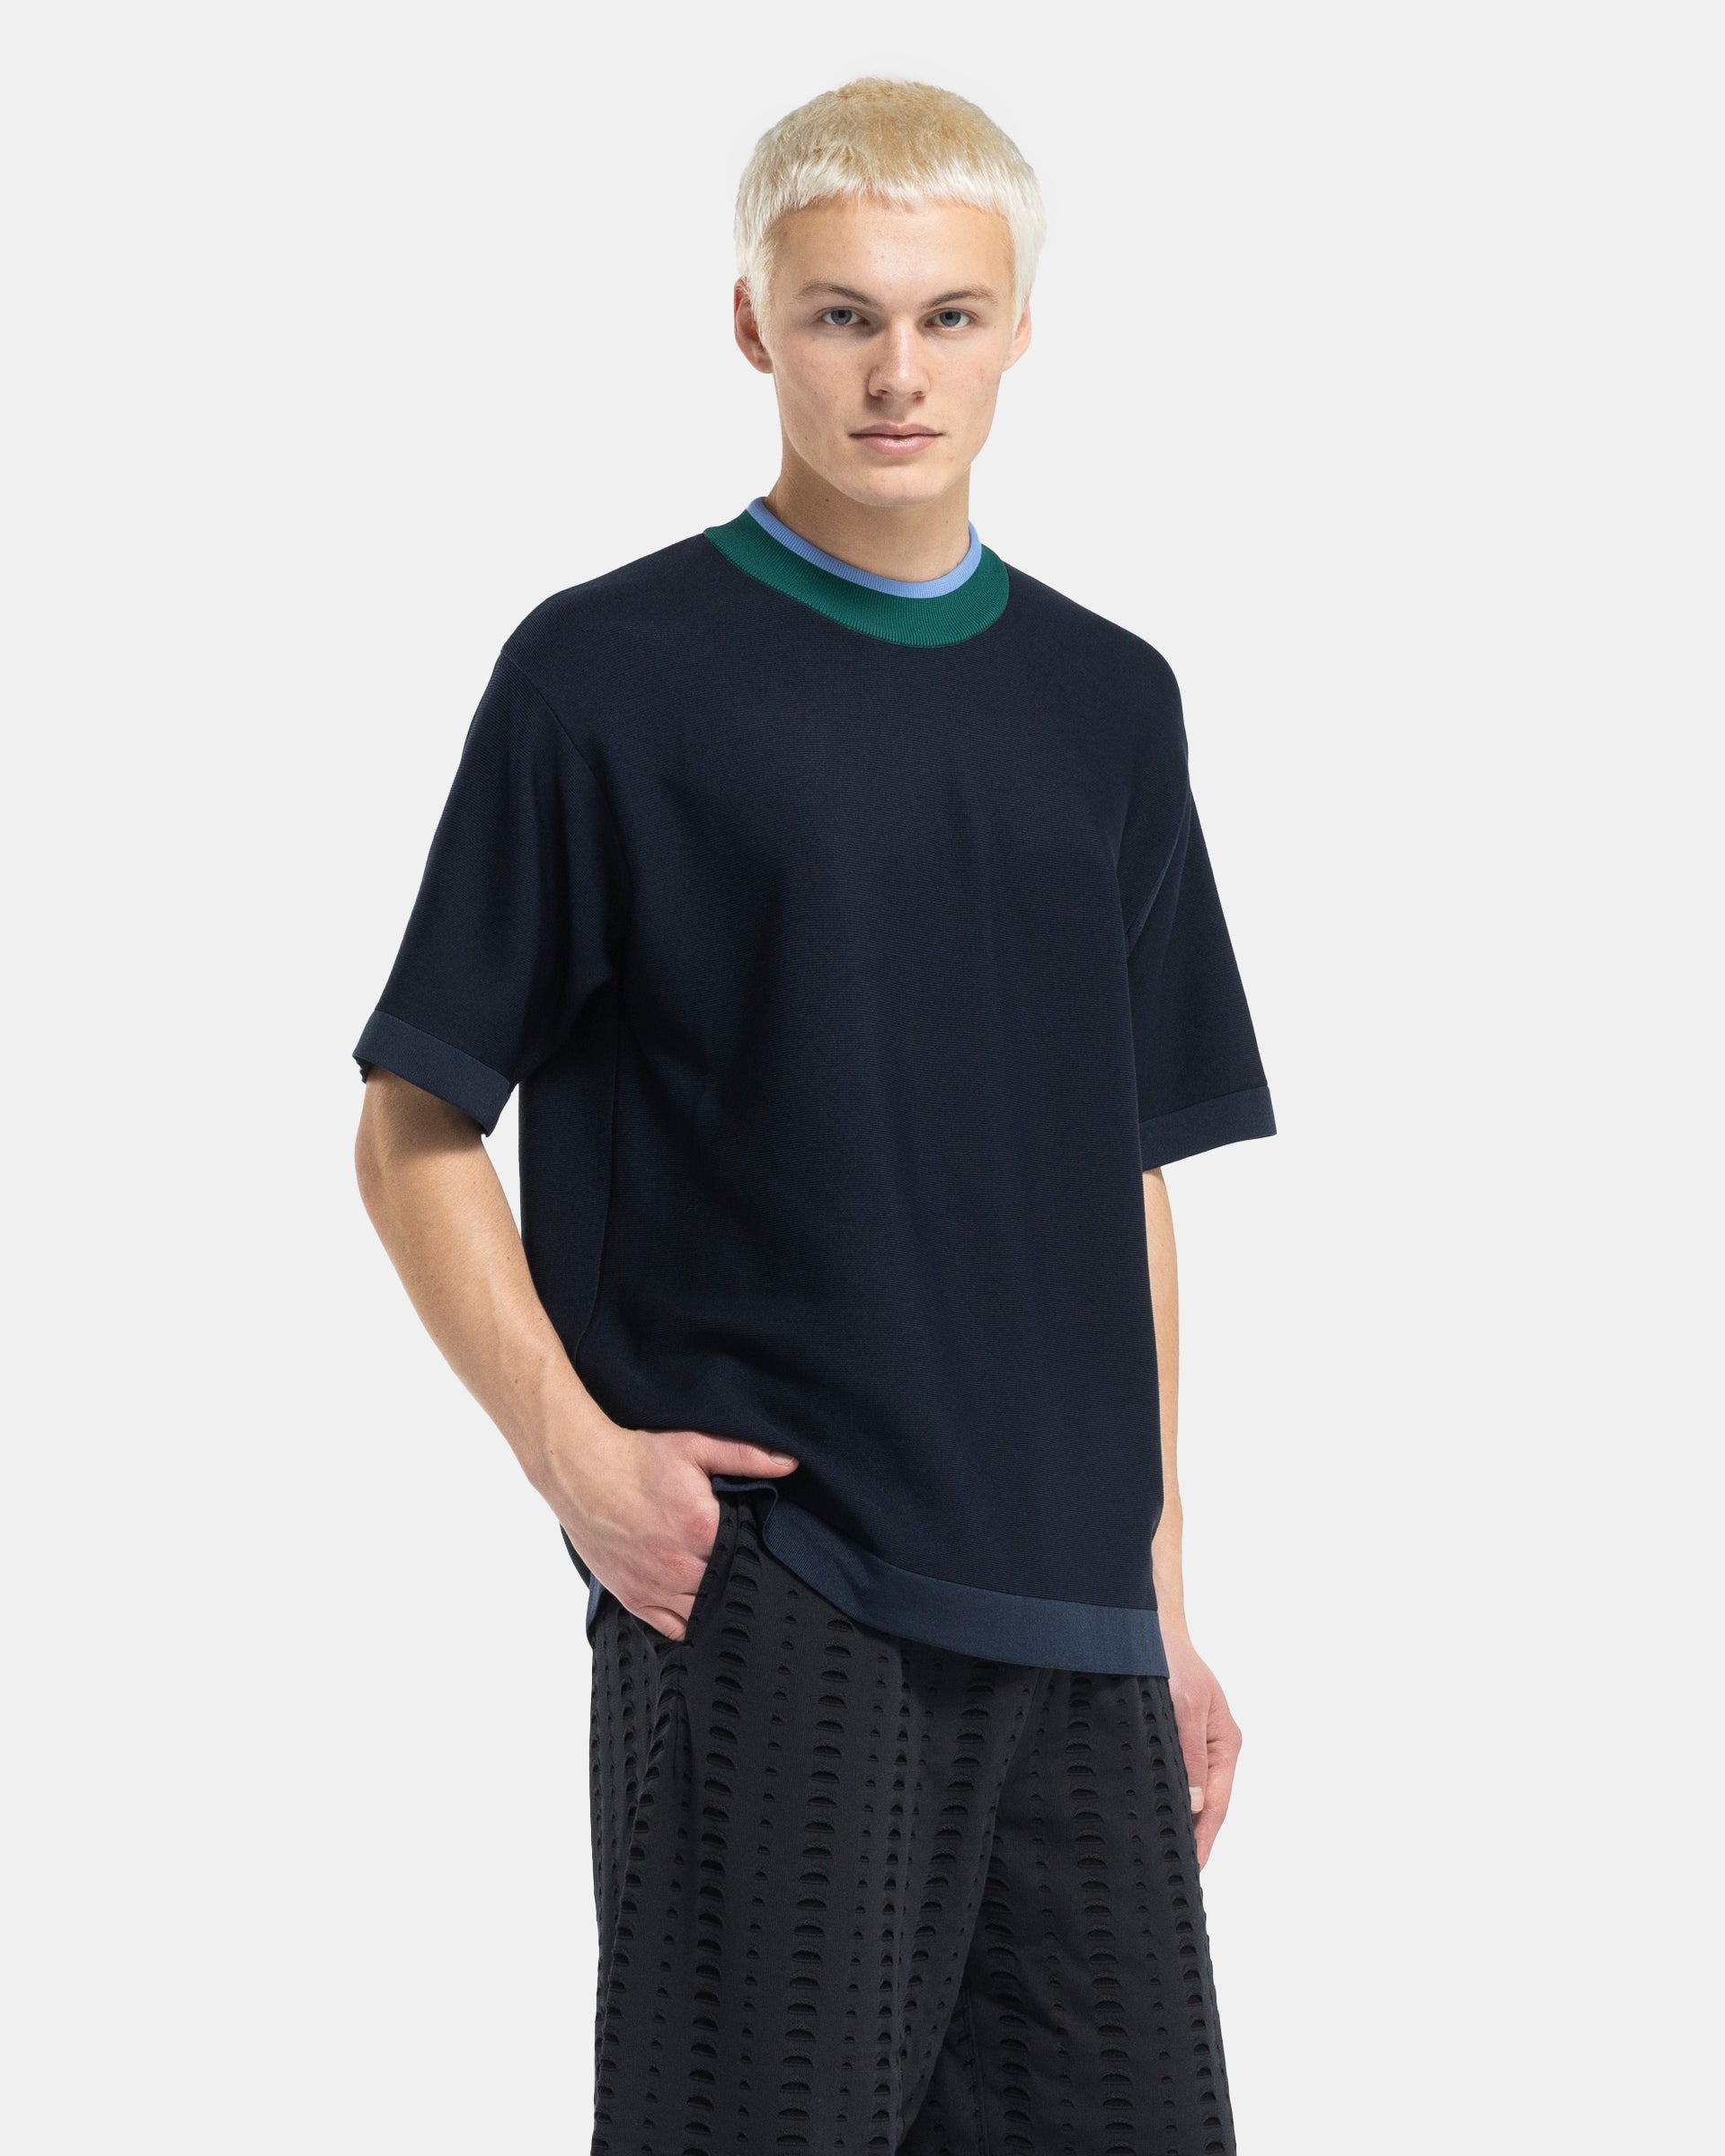 Cupro Garter Short Sleeve T-Shirt in Navy Multi